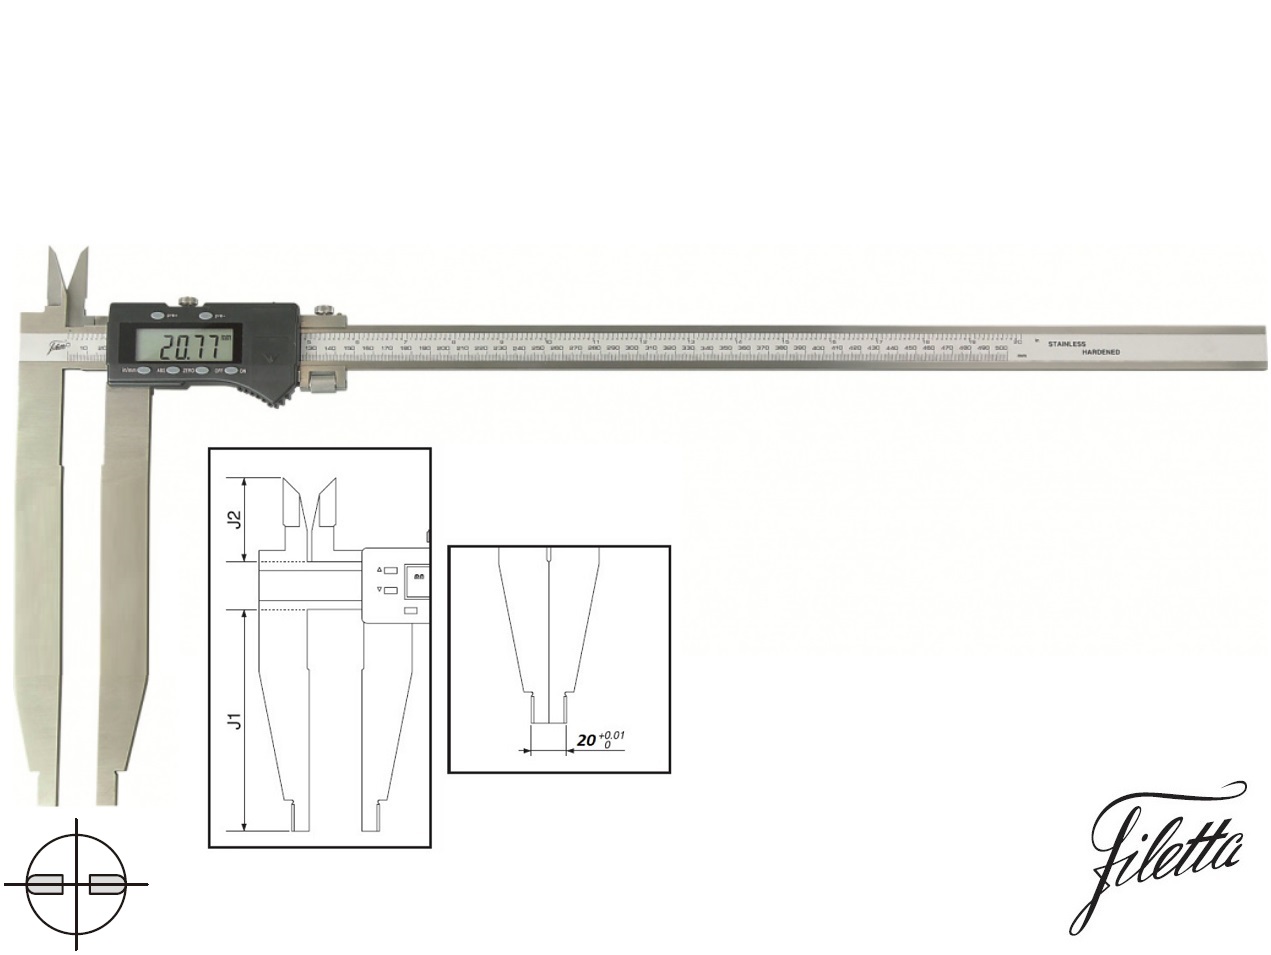 Digitální posuvné měřítko Filetta 0-2000/300 mm s měřicími nožíky pro vnitřní měření